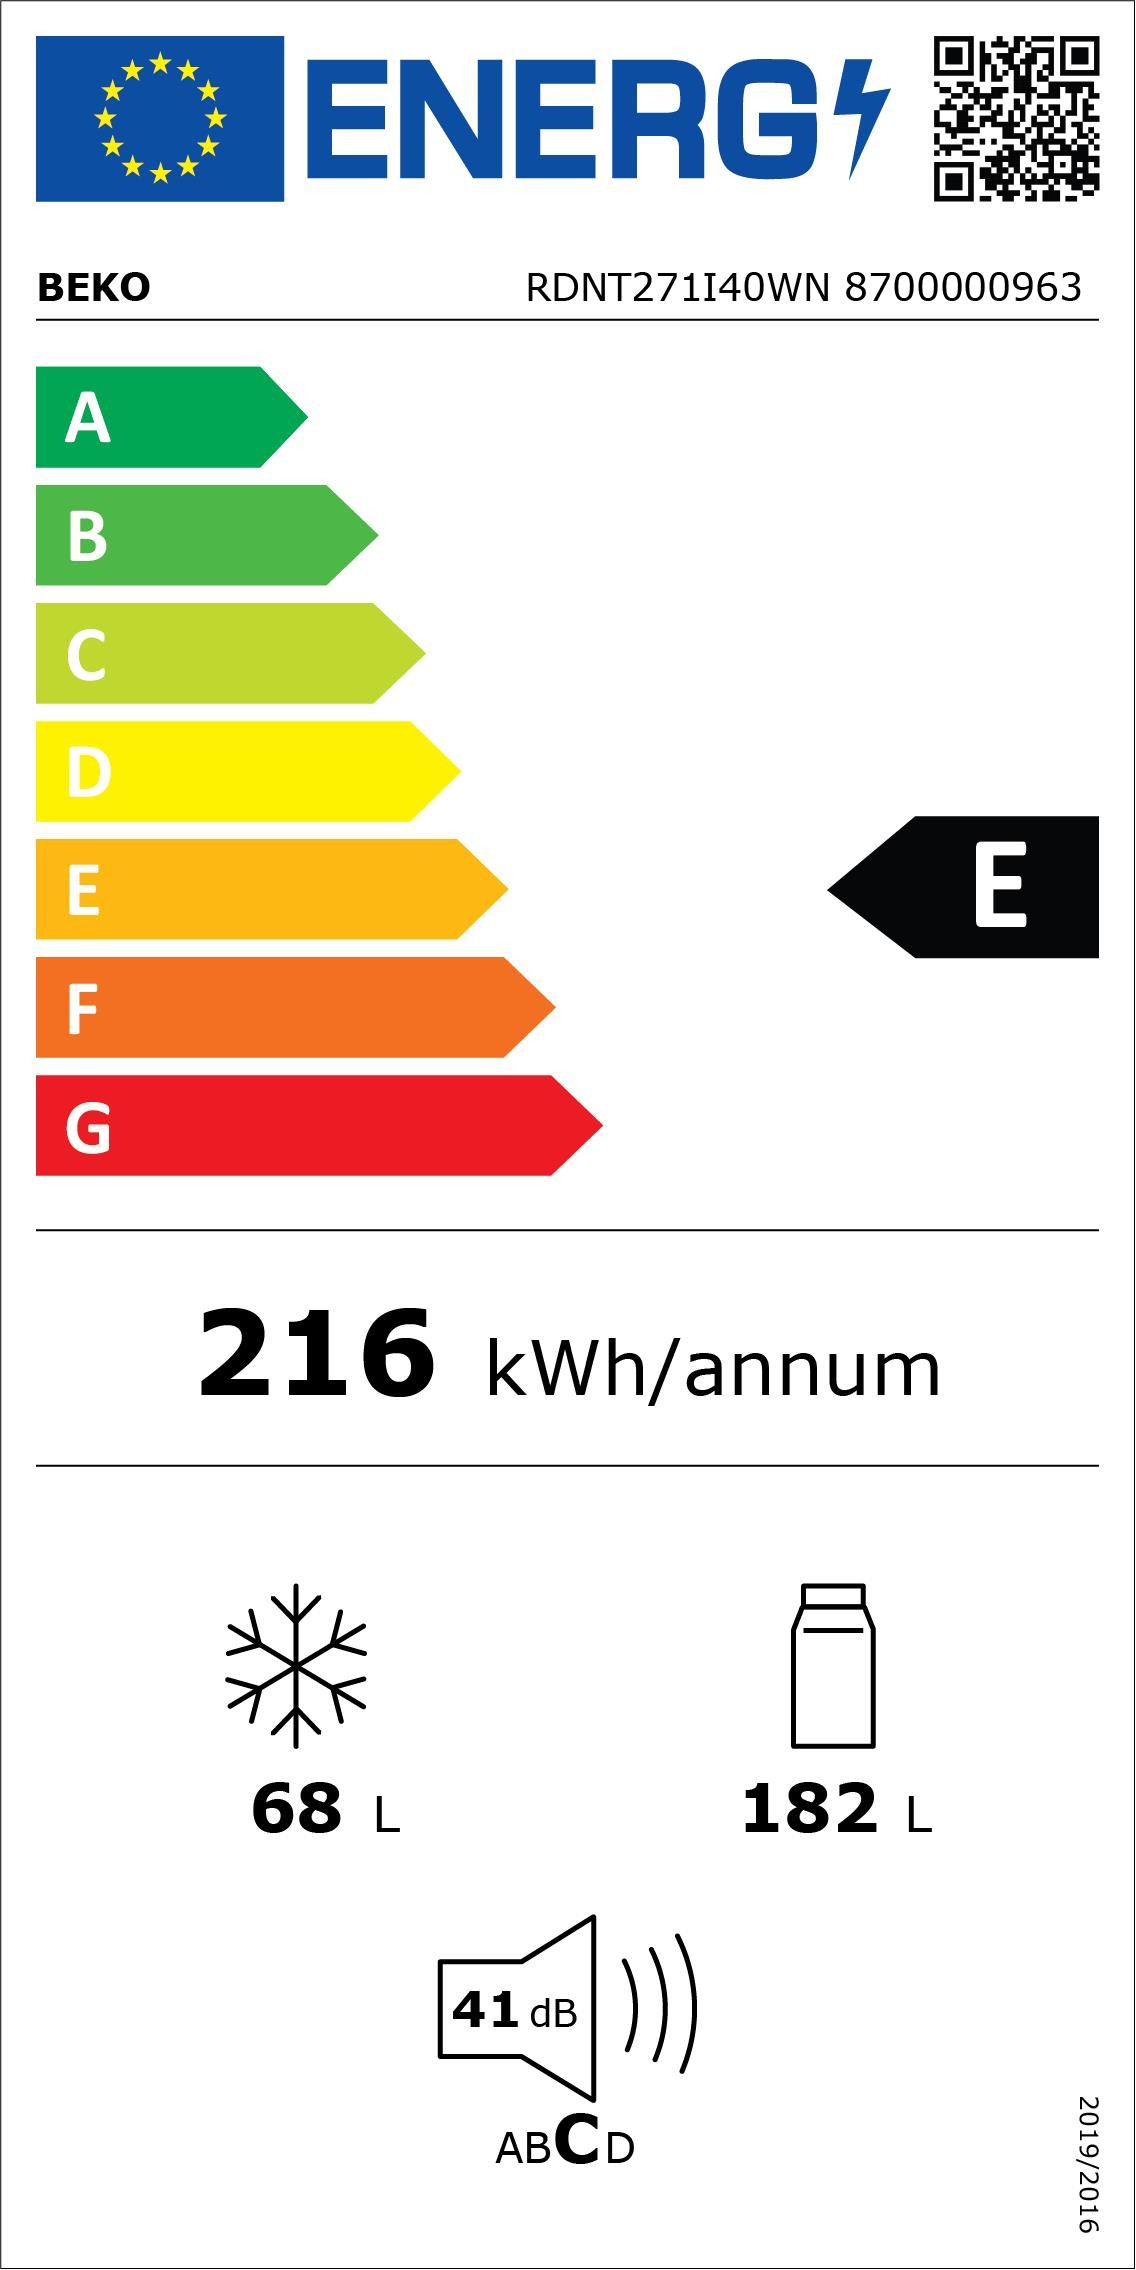 Etiqueta de Eficiencia Energética - RDNT271I40WN